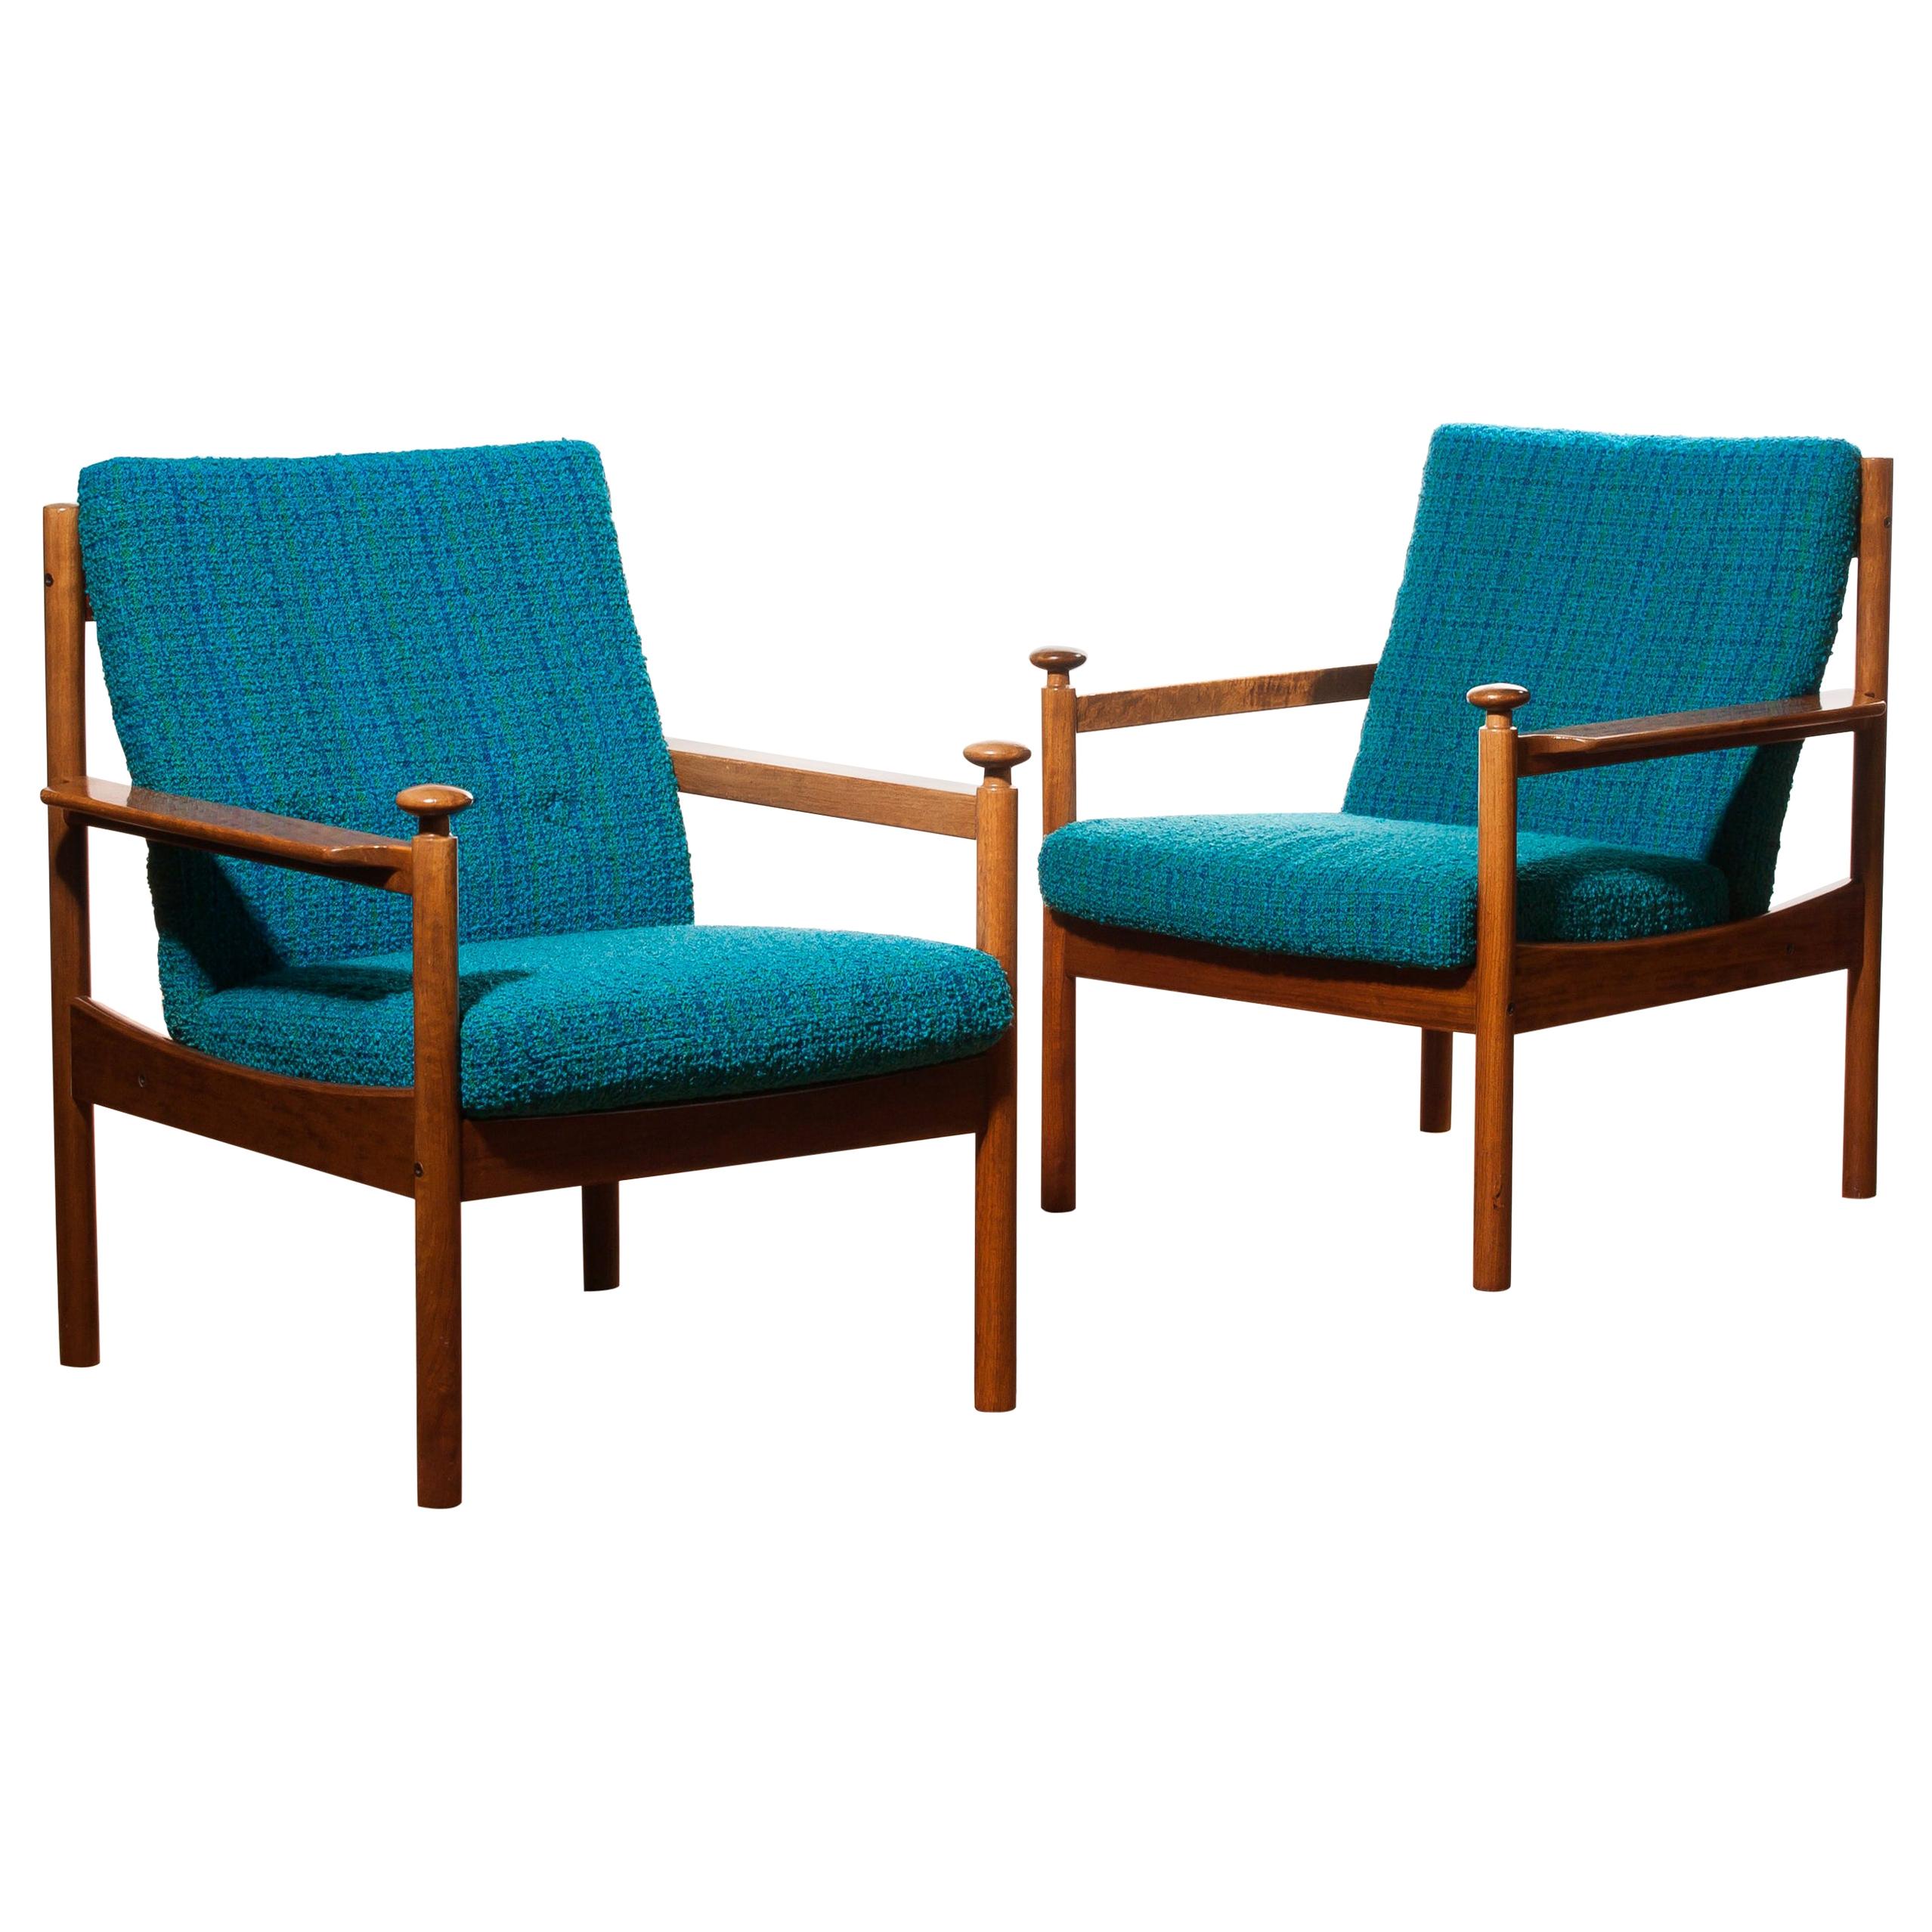 1950s, Pair of Blue Lounge Chairs by Torbjørn Afdal for Sandvik & Co. Mobler